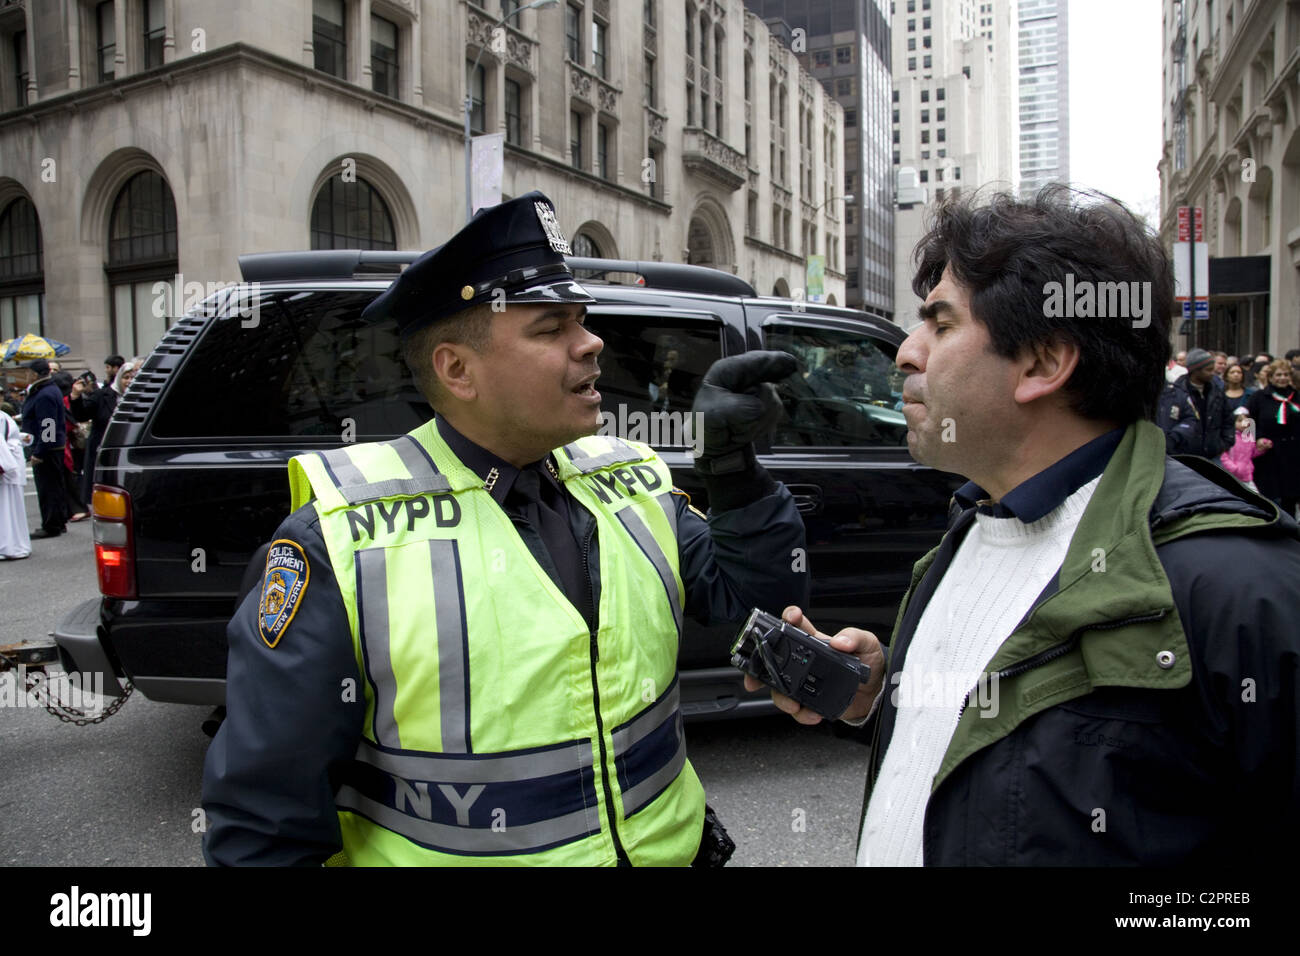 2011: il Persiano Parade, Madison Avenue, New York City. Poliziotto in un alterco con una parata goer non segue le regole. Foto Stock